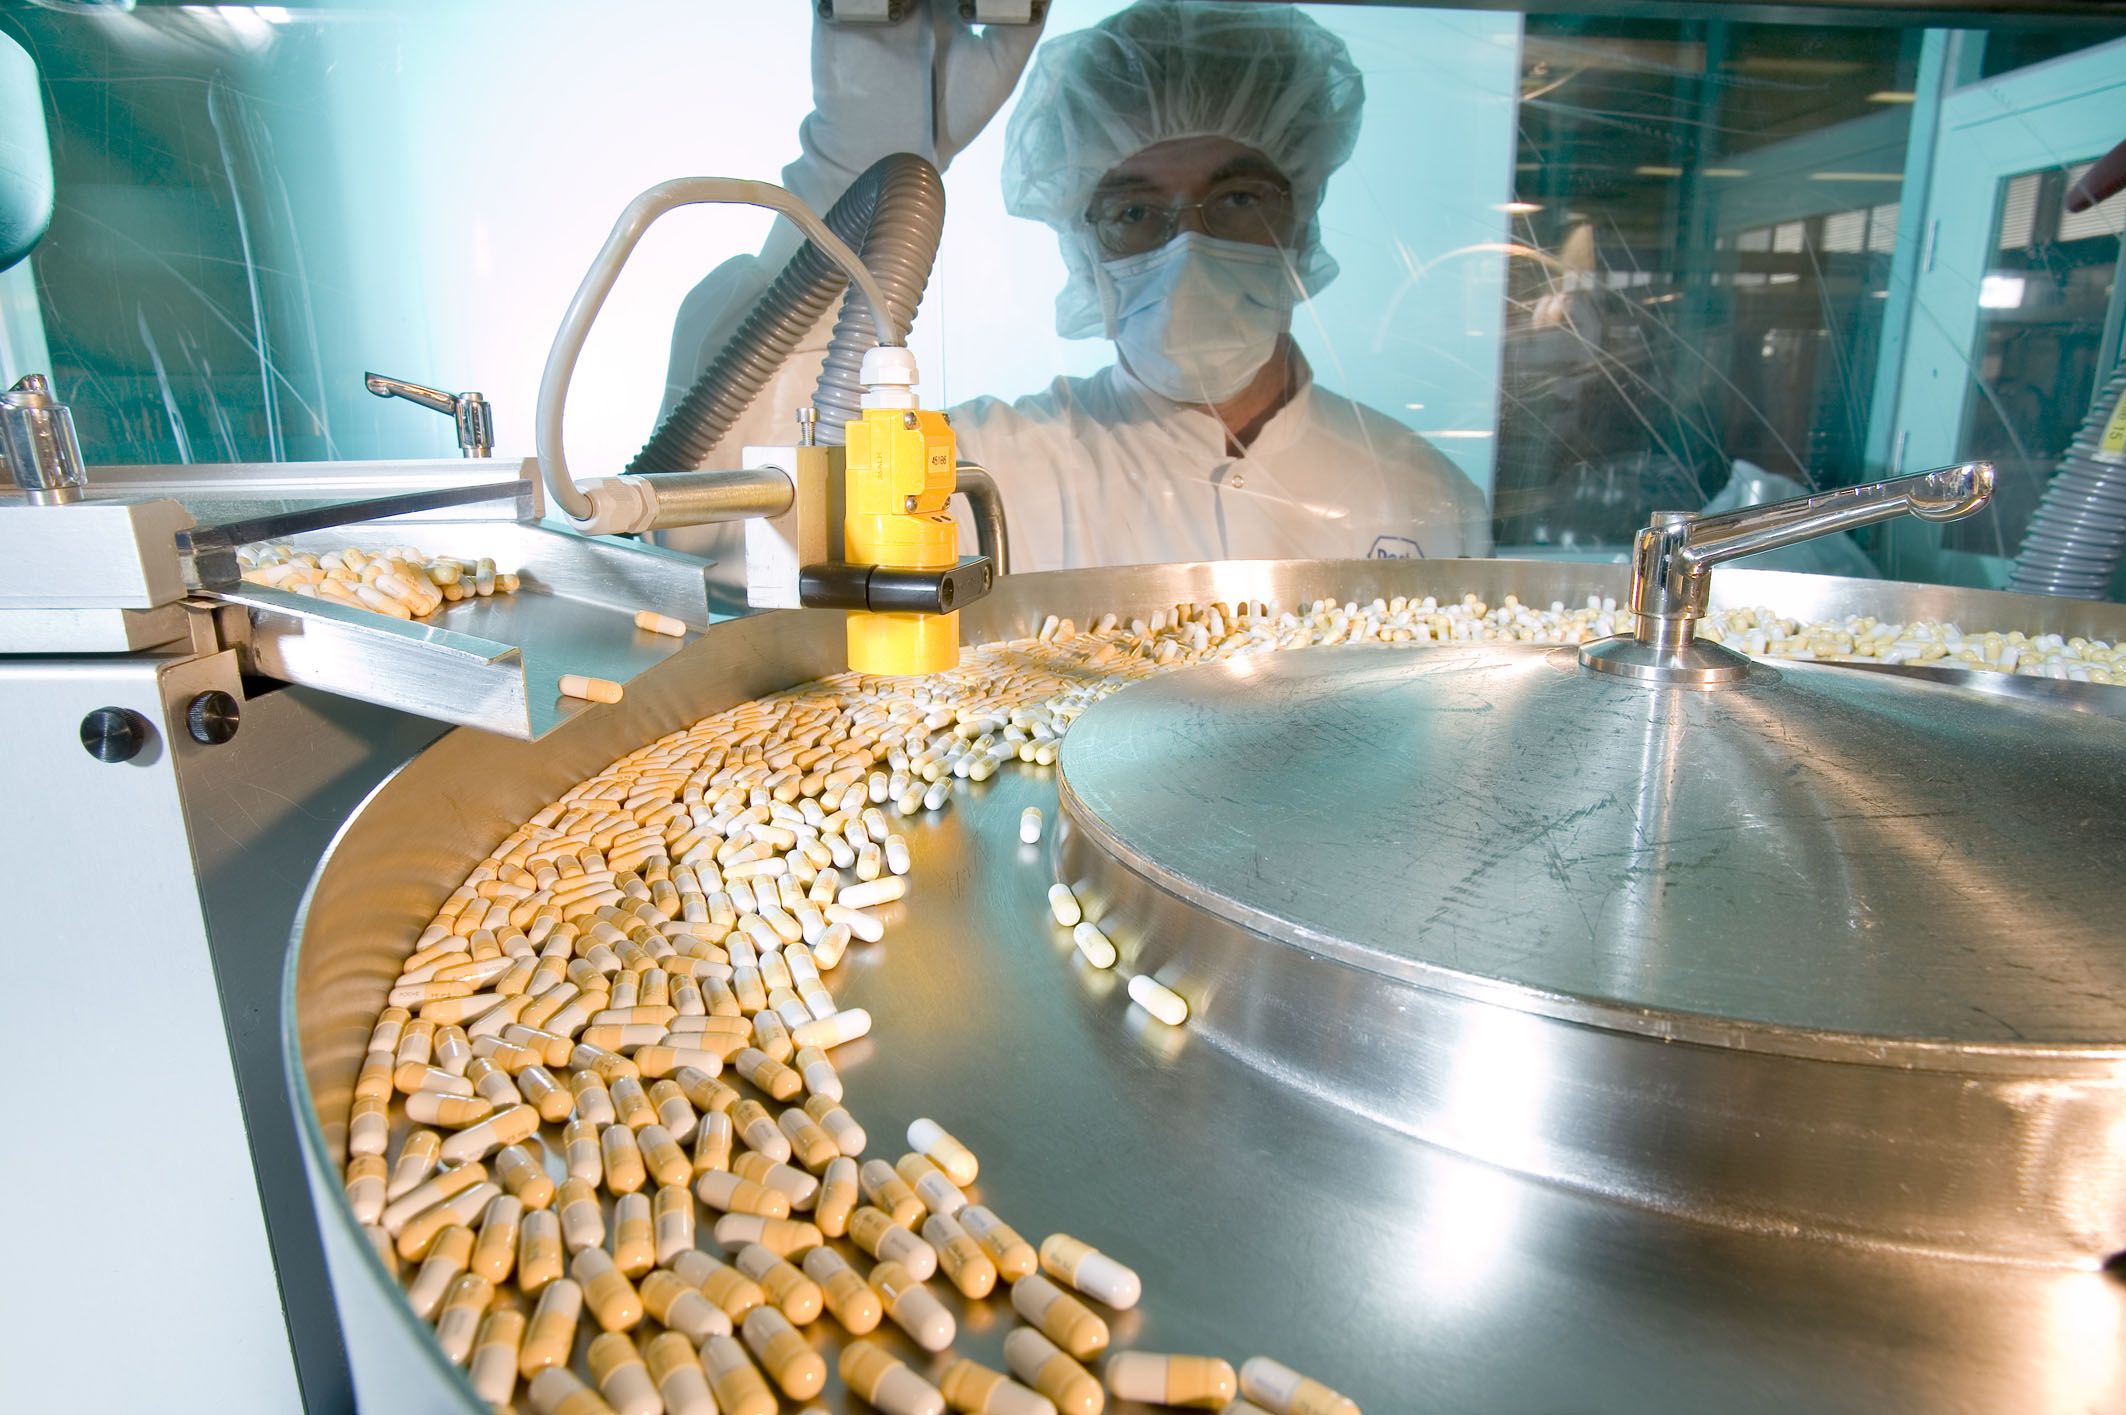 Московский эндокринный завод готов производить лекарства на основе конопли